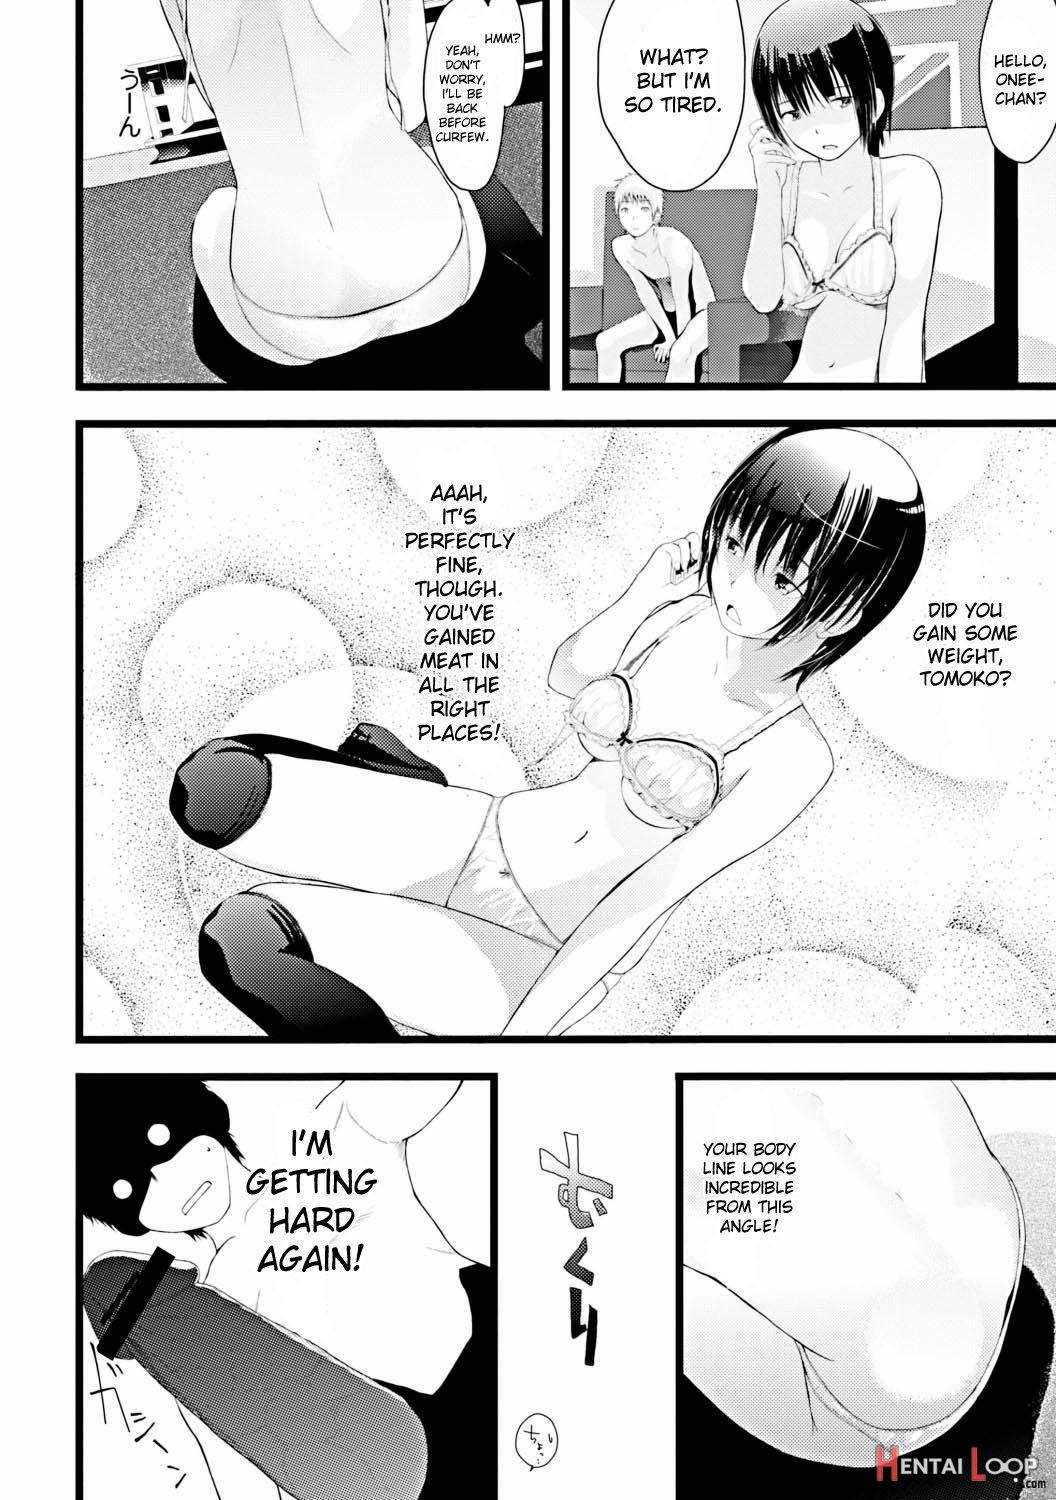 Tomoko R3 page 4